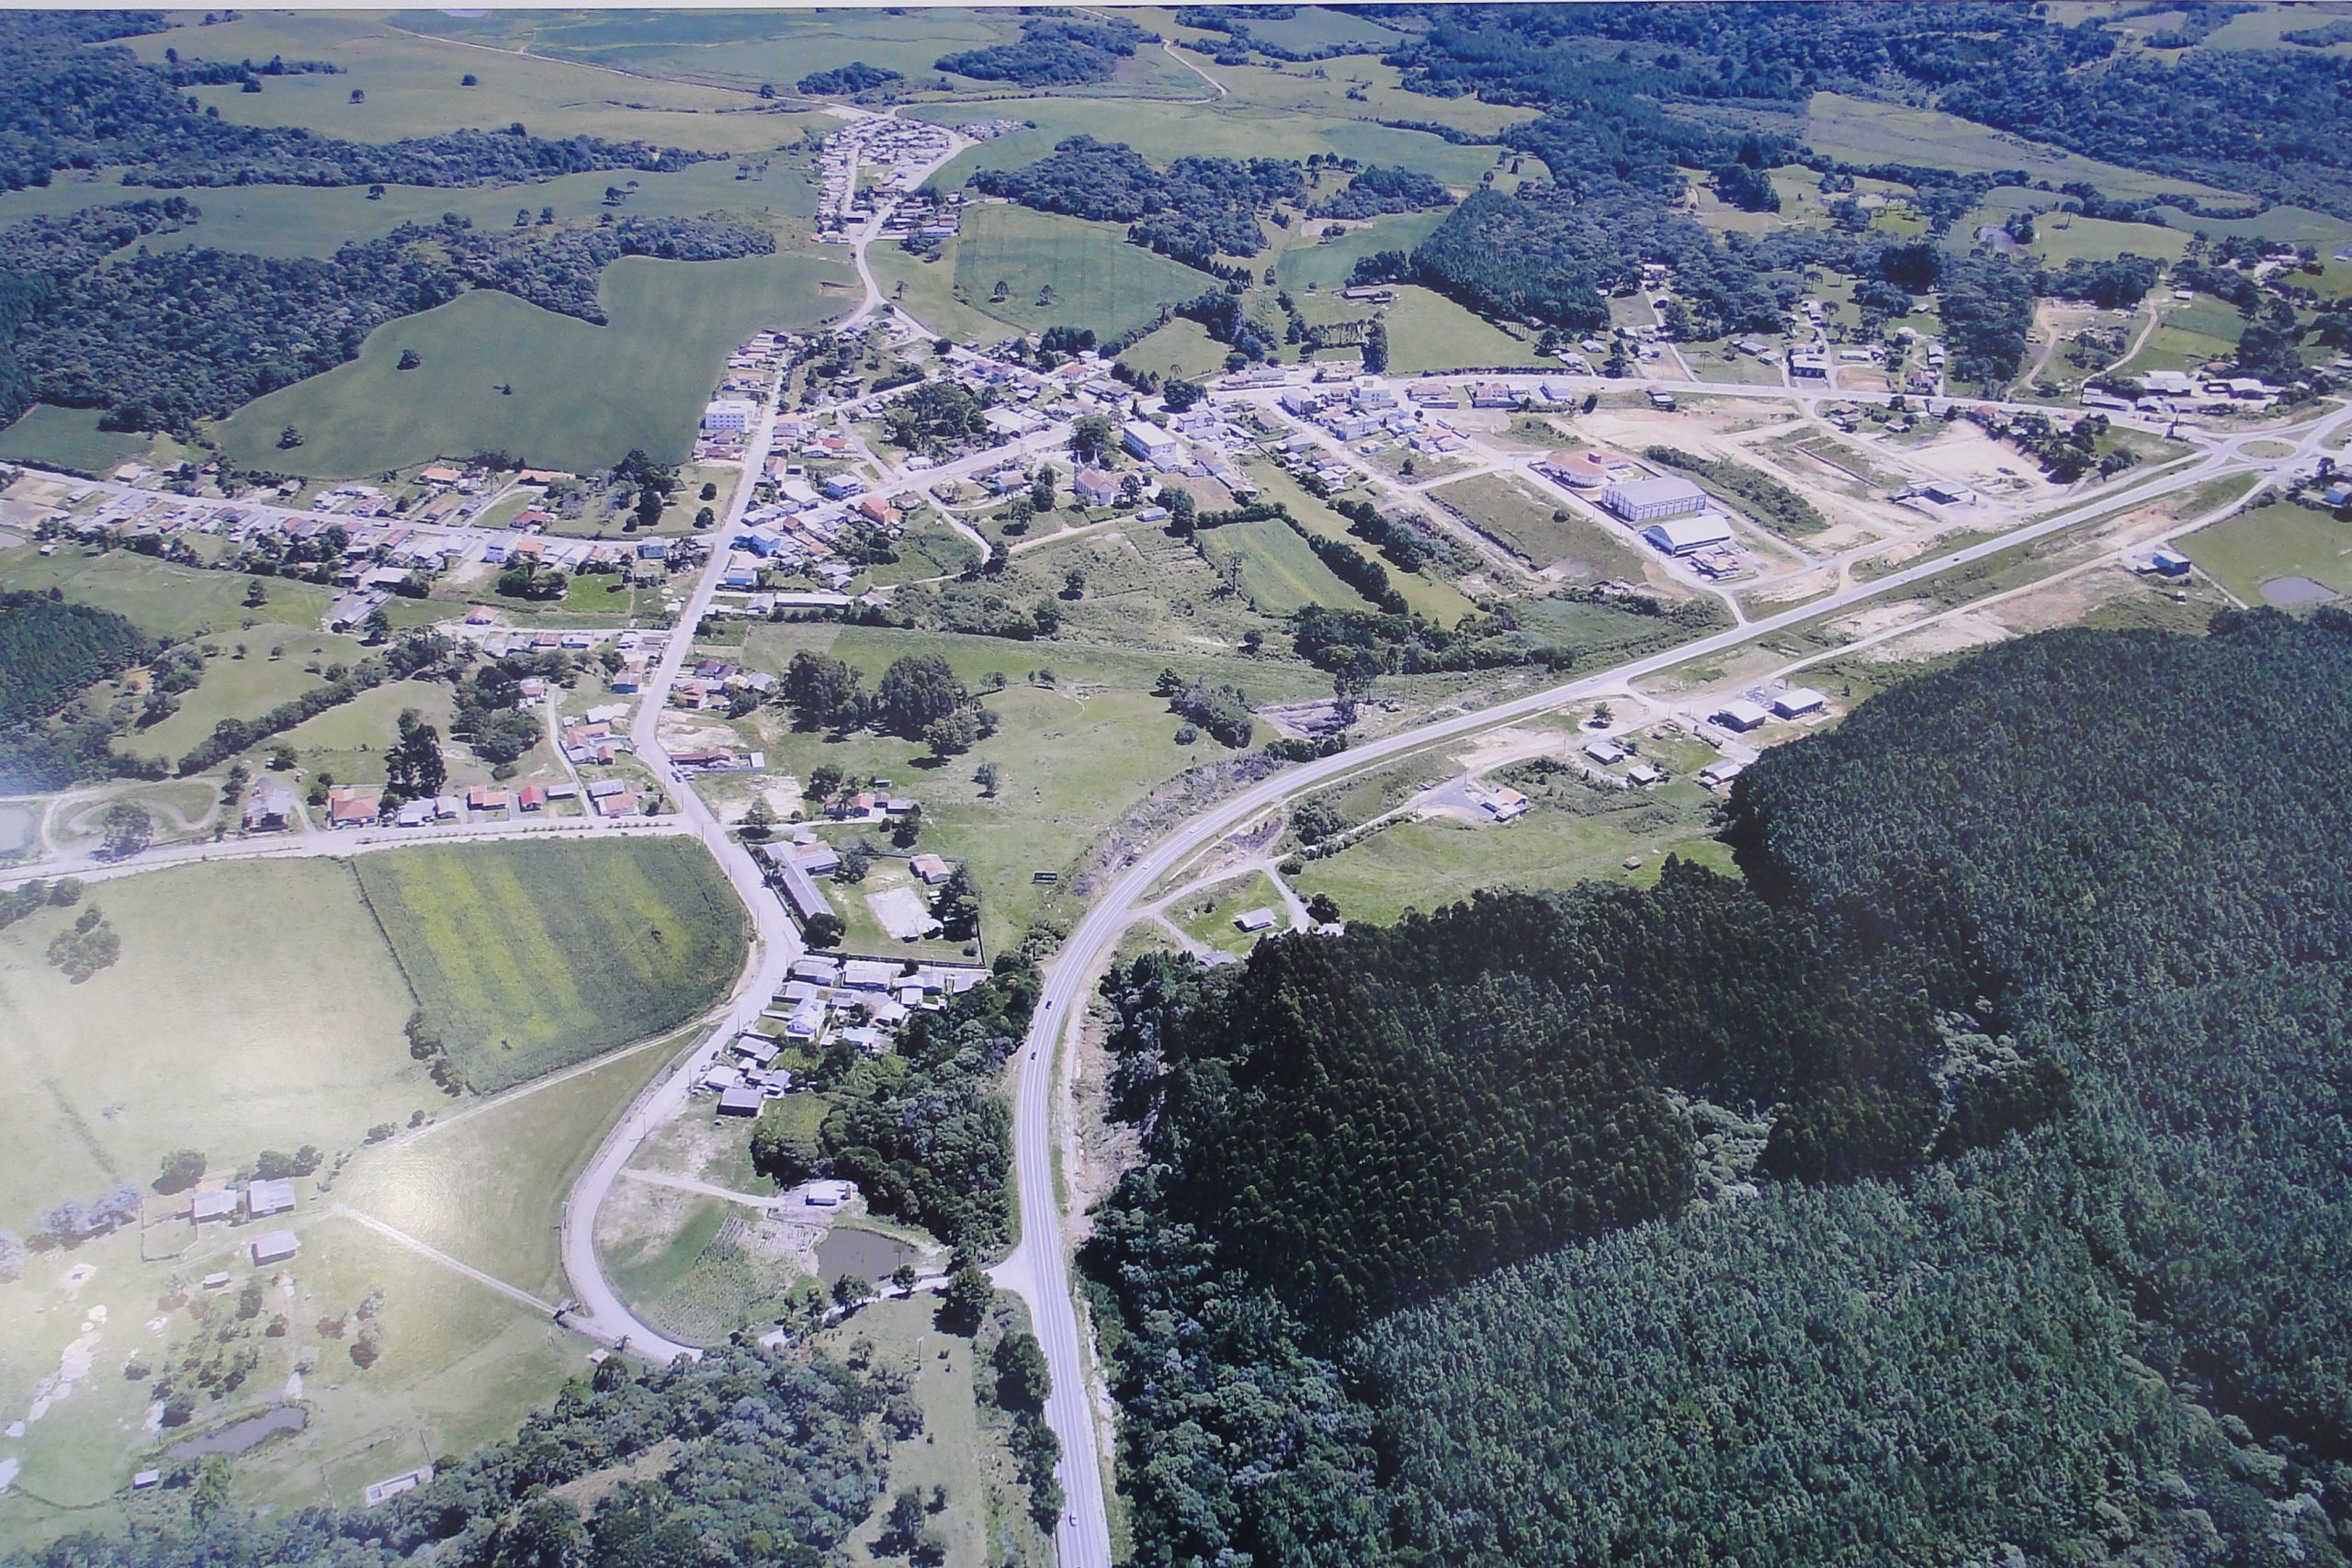 Vista aérea parcial de Bocaina do Sul.